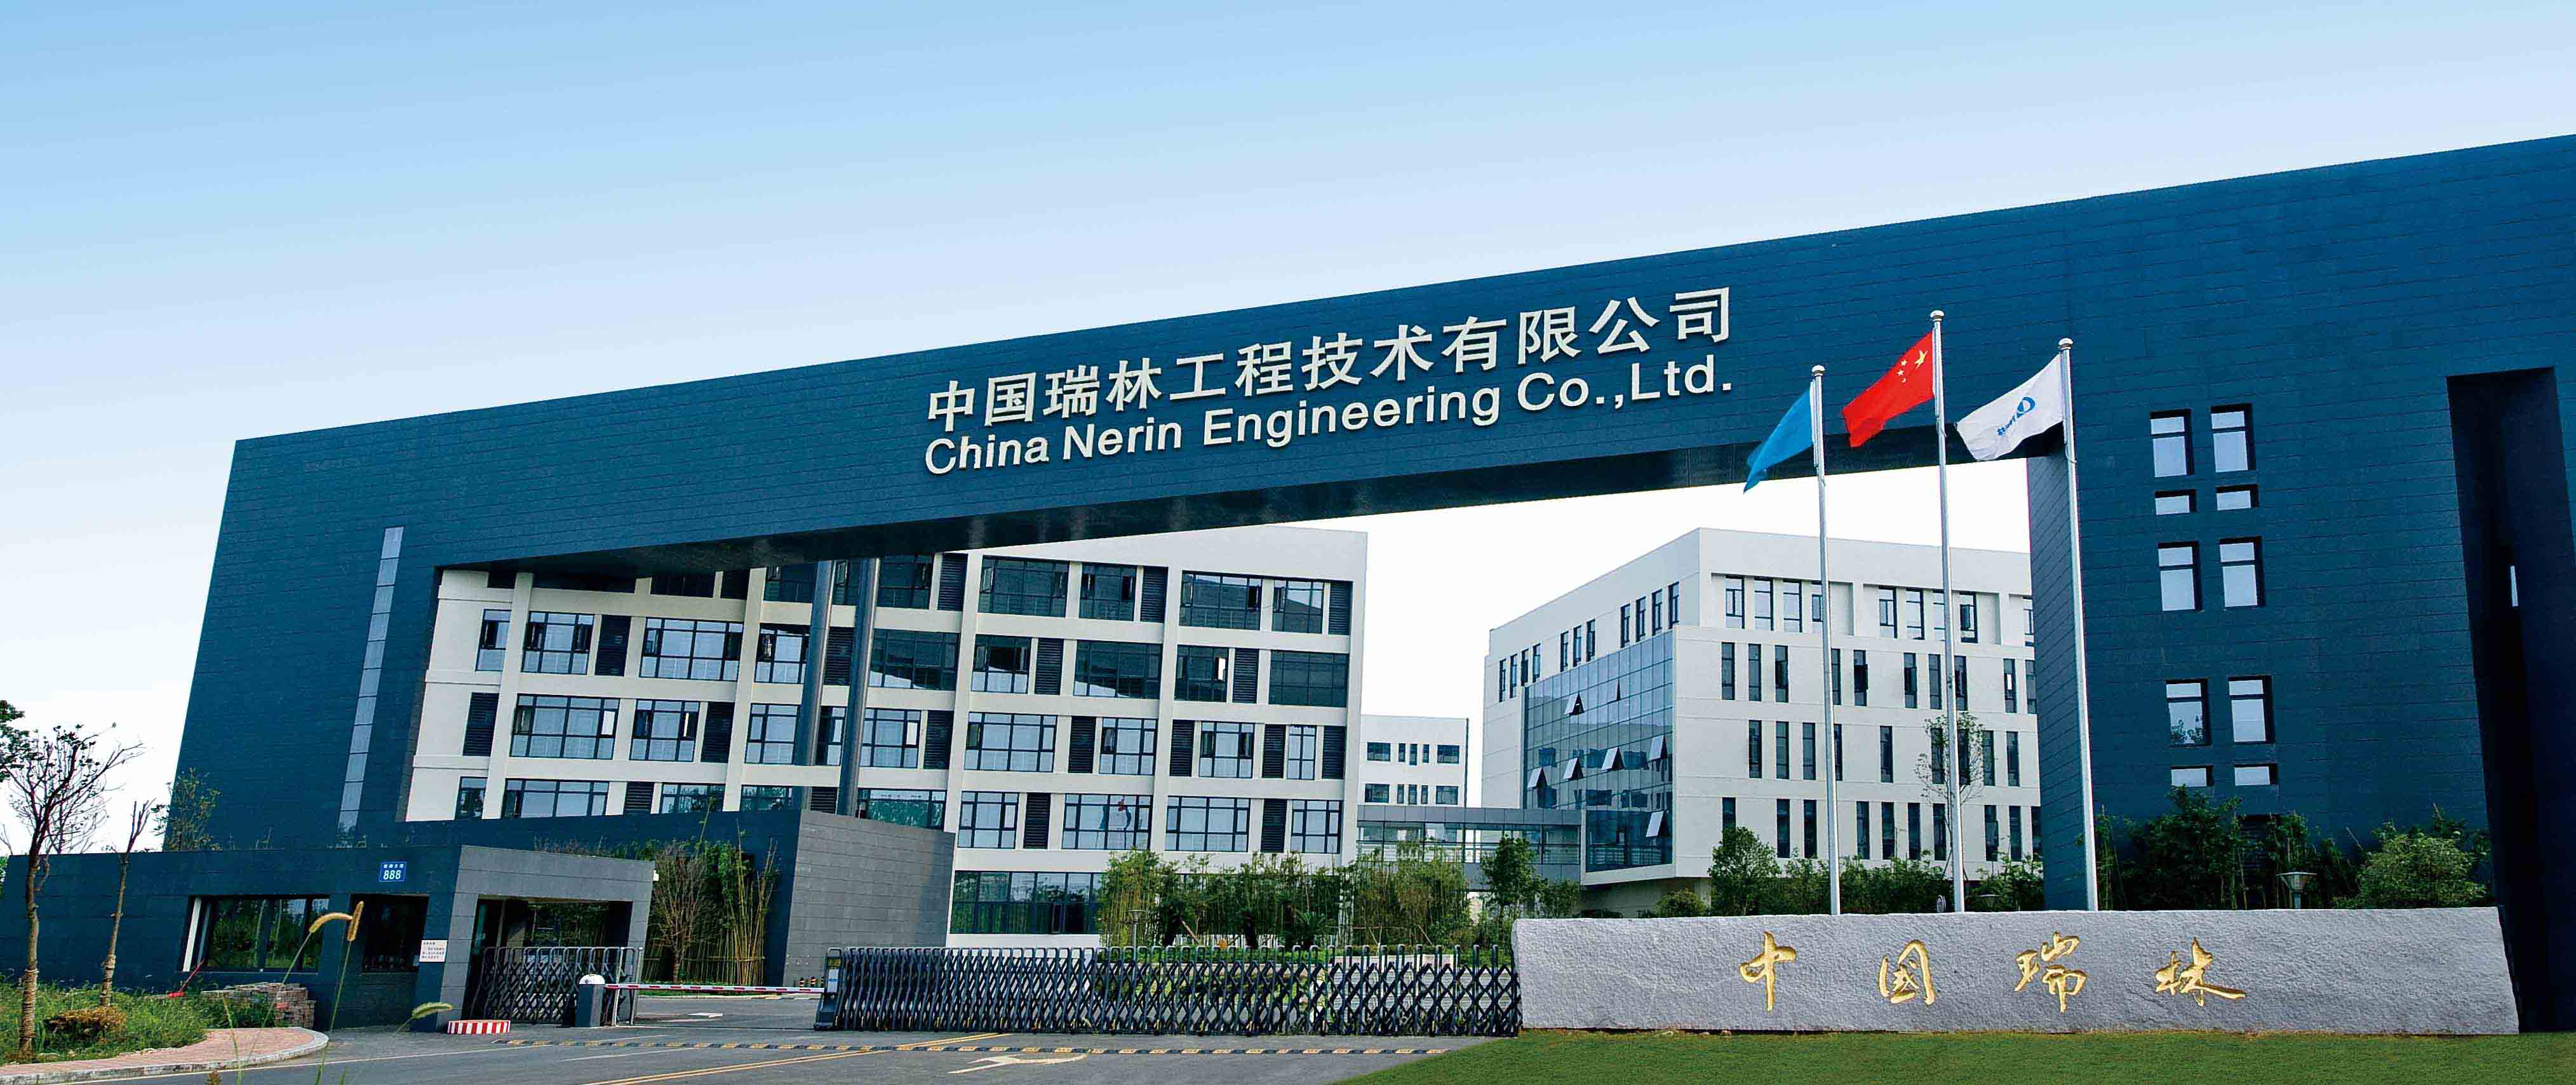 中國瑞林工程技術有限公司